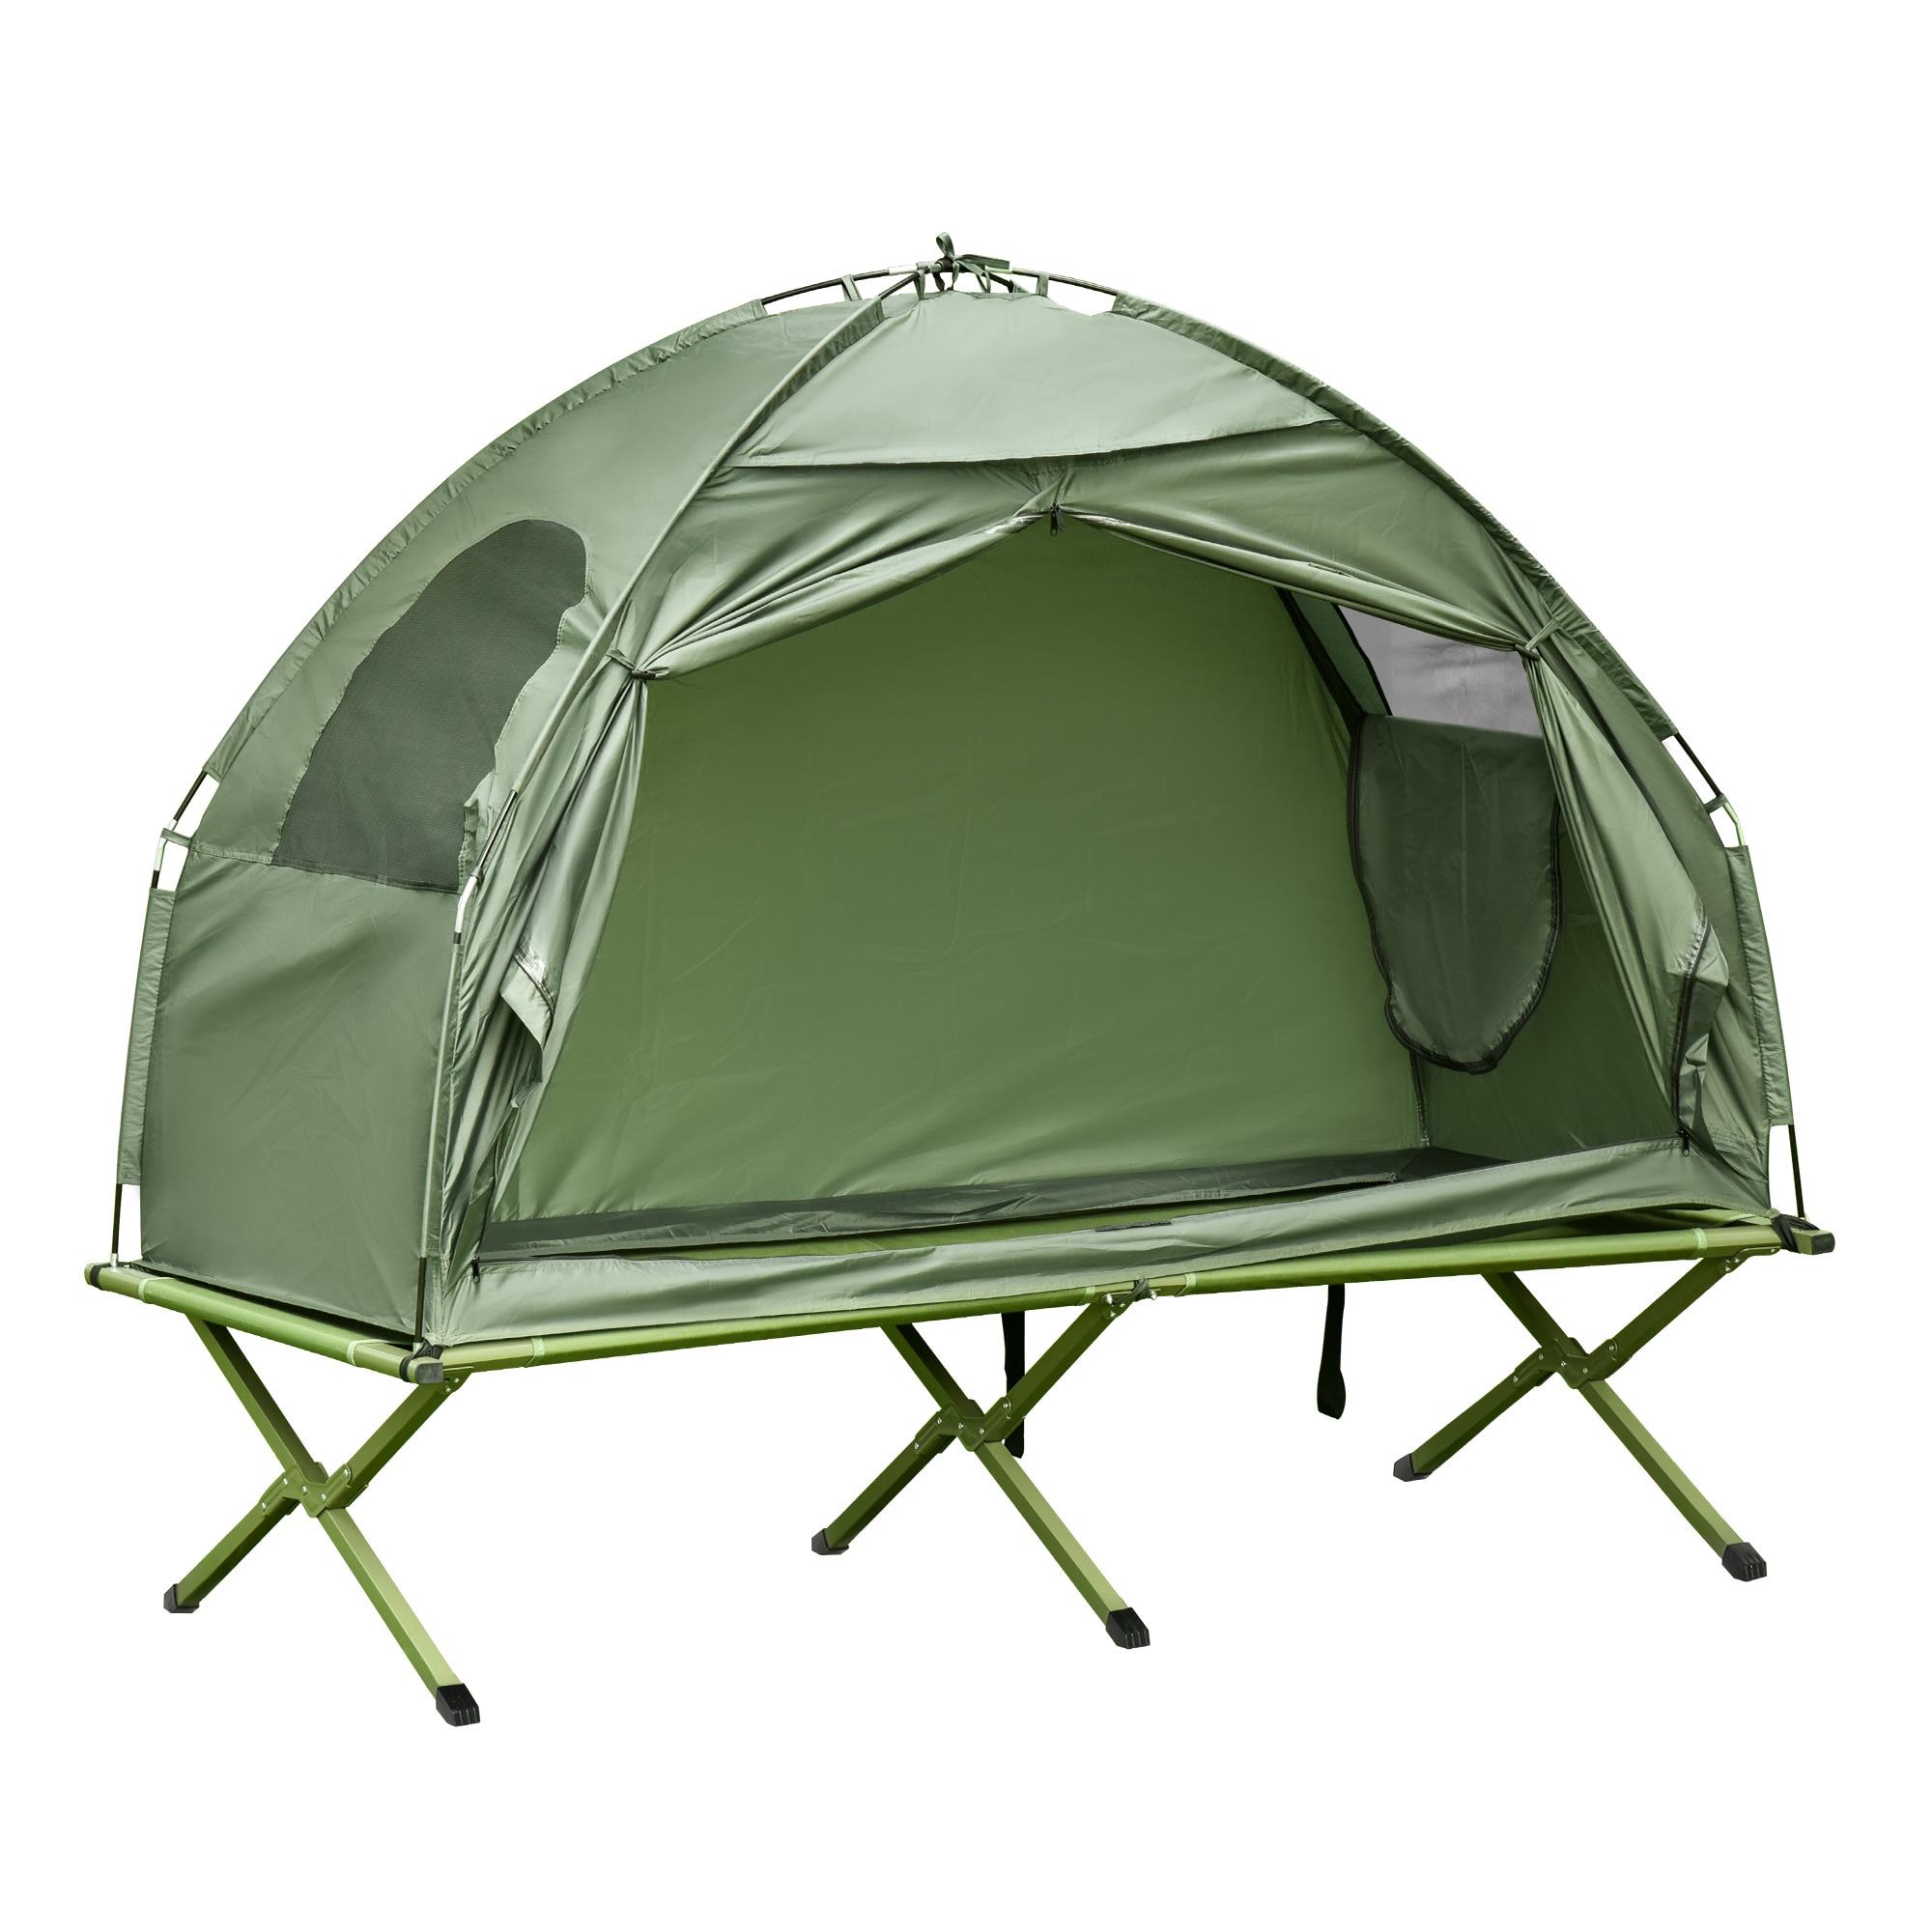 Buy 1 Bedroom Camping Tent Online